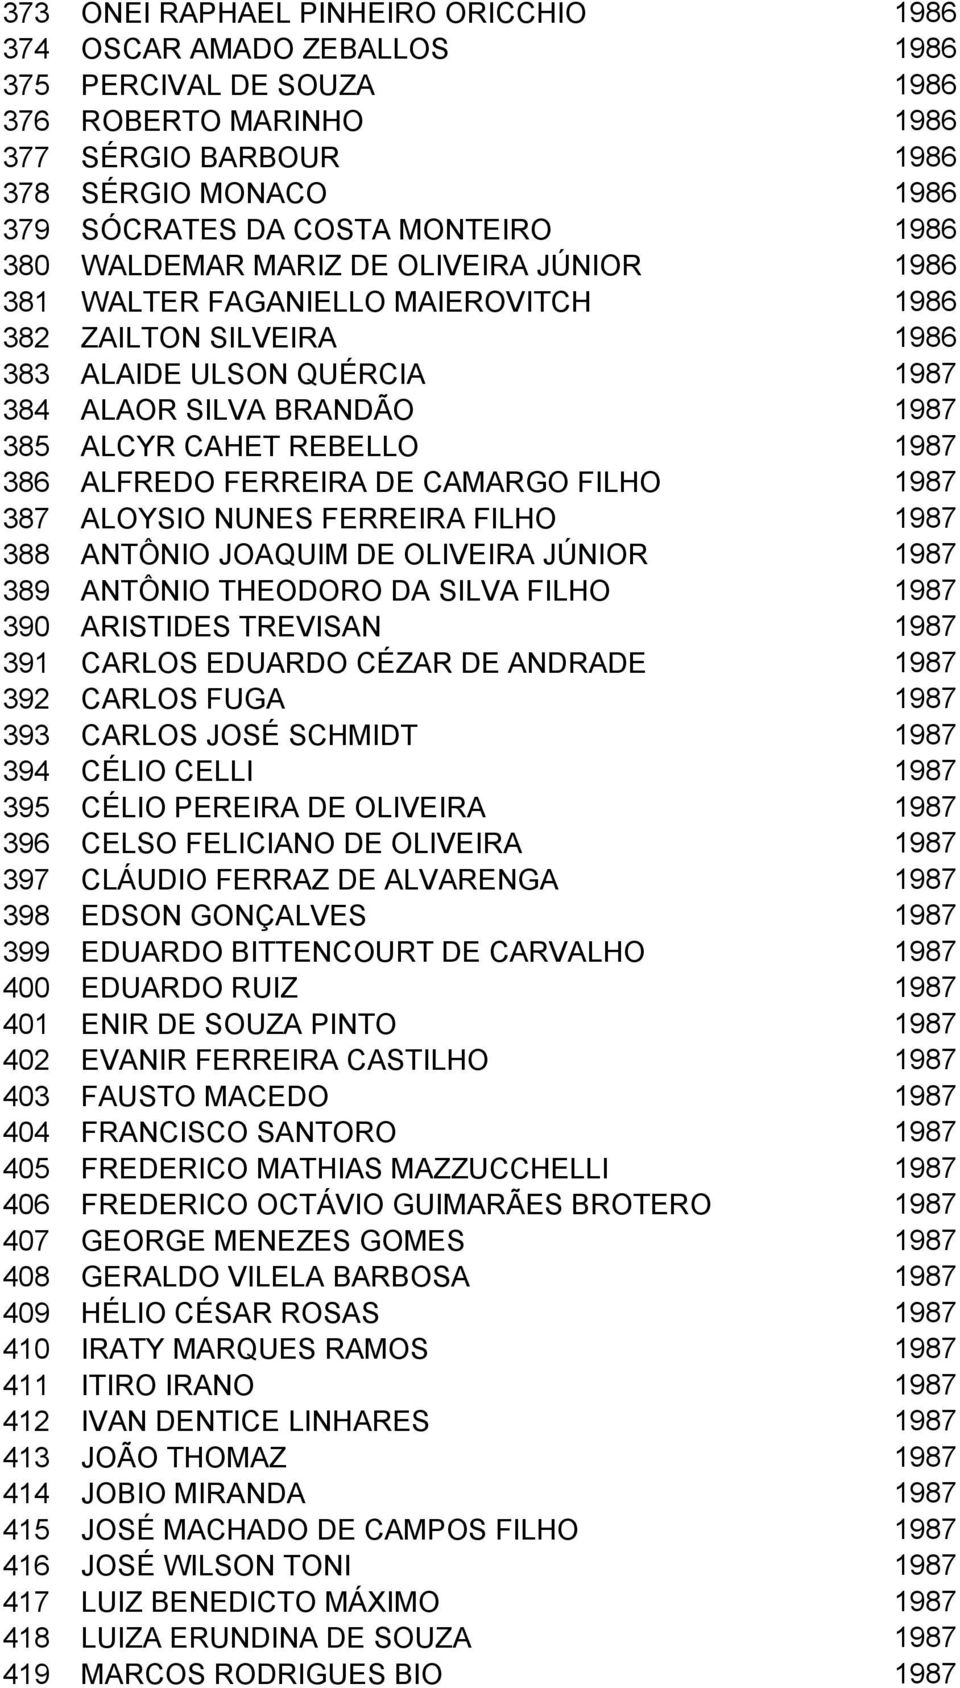 1987 386 ALFREDO FERREIRA DE CAMARGO FILHO 1987 387 ALOYSIO NUNES FERREIRA FILHO 1987 388 ANTÔNIO JOAQUIM DE OLIVEIRA JÚNIOR 1987 389 ANTÔNIO THEODORO DA SILVA FILHO 1987 390 ARISTIDES TREVISAN 1987